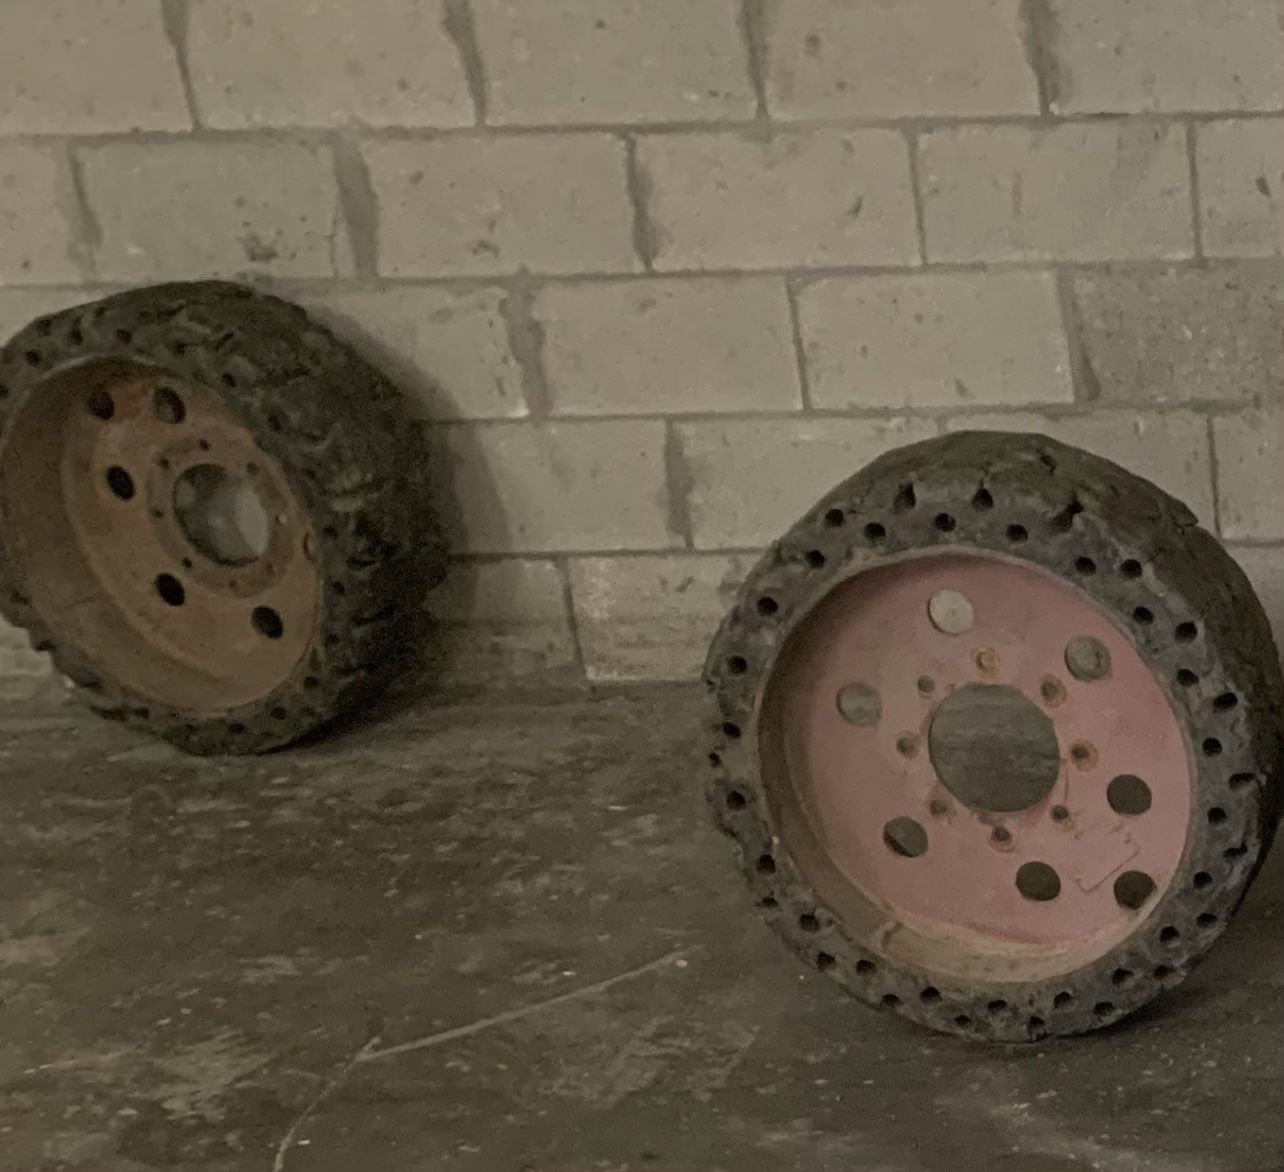 Bobcat Tires 